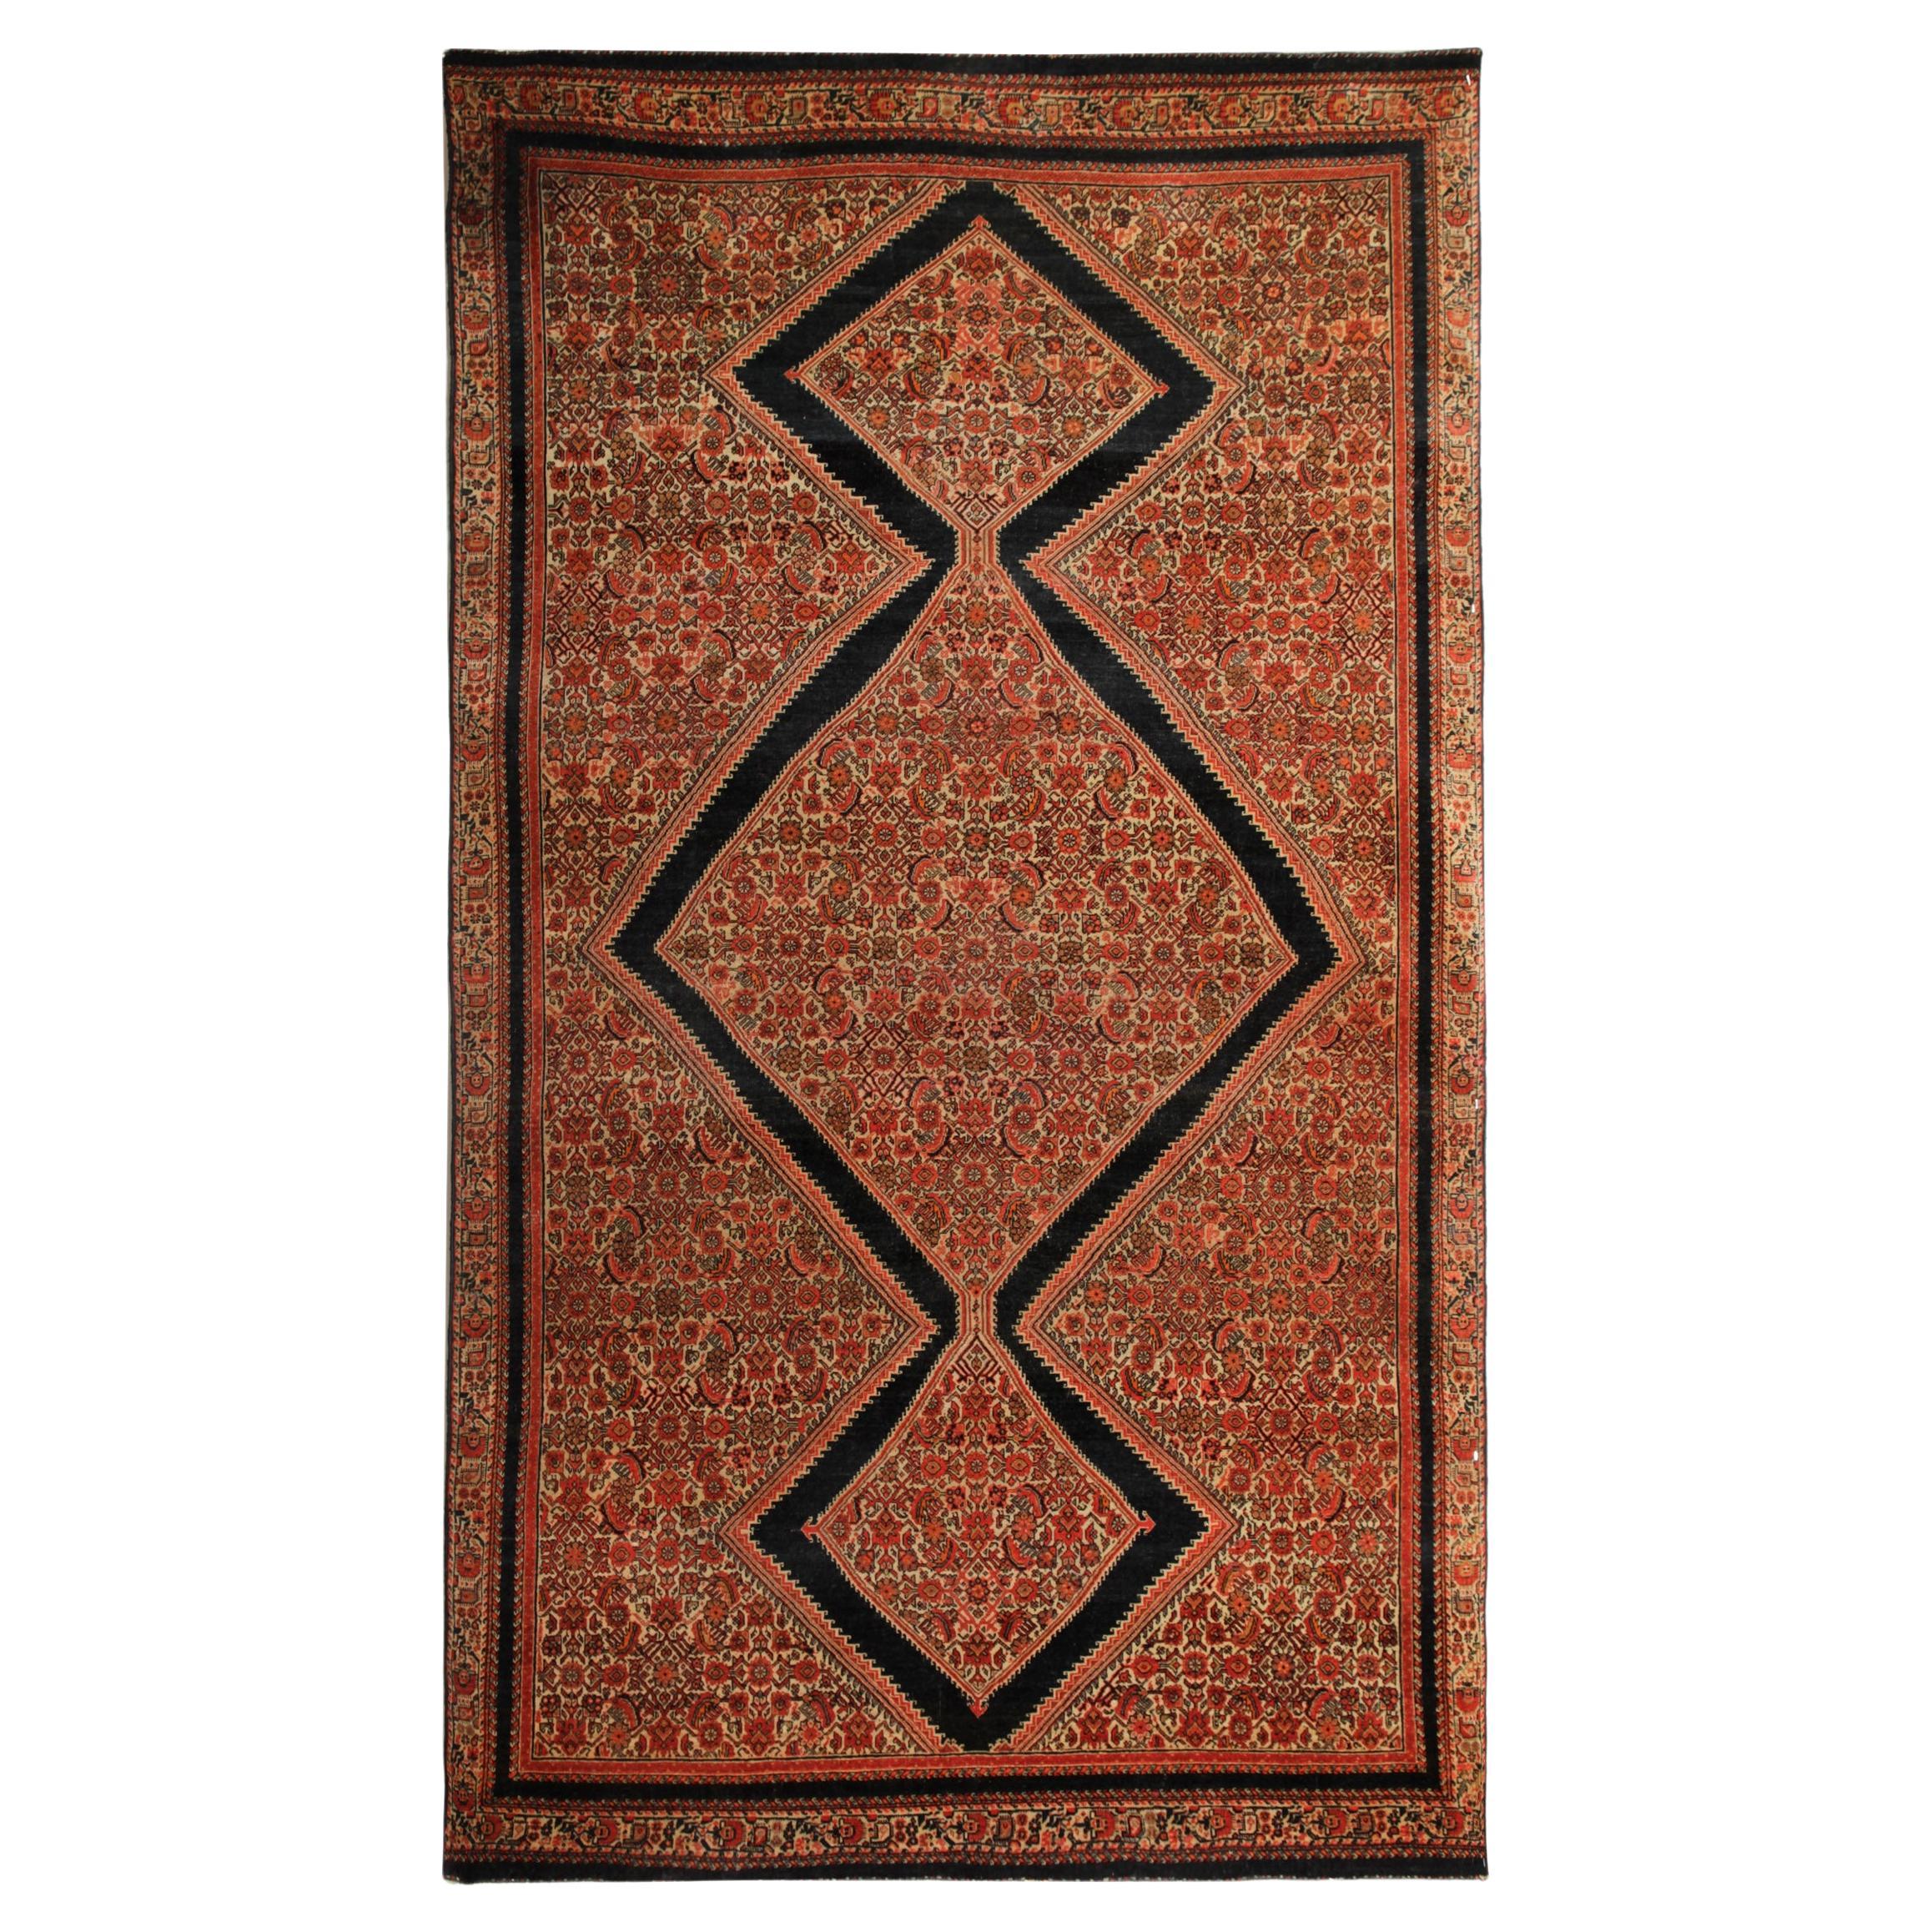 Antiker handgewebter Teppich aus orientalischer Wolle, rostfarben, geometrischer Teppich